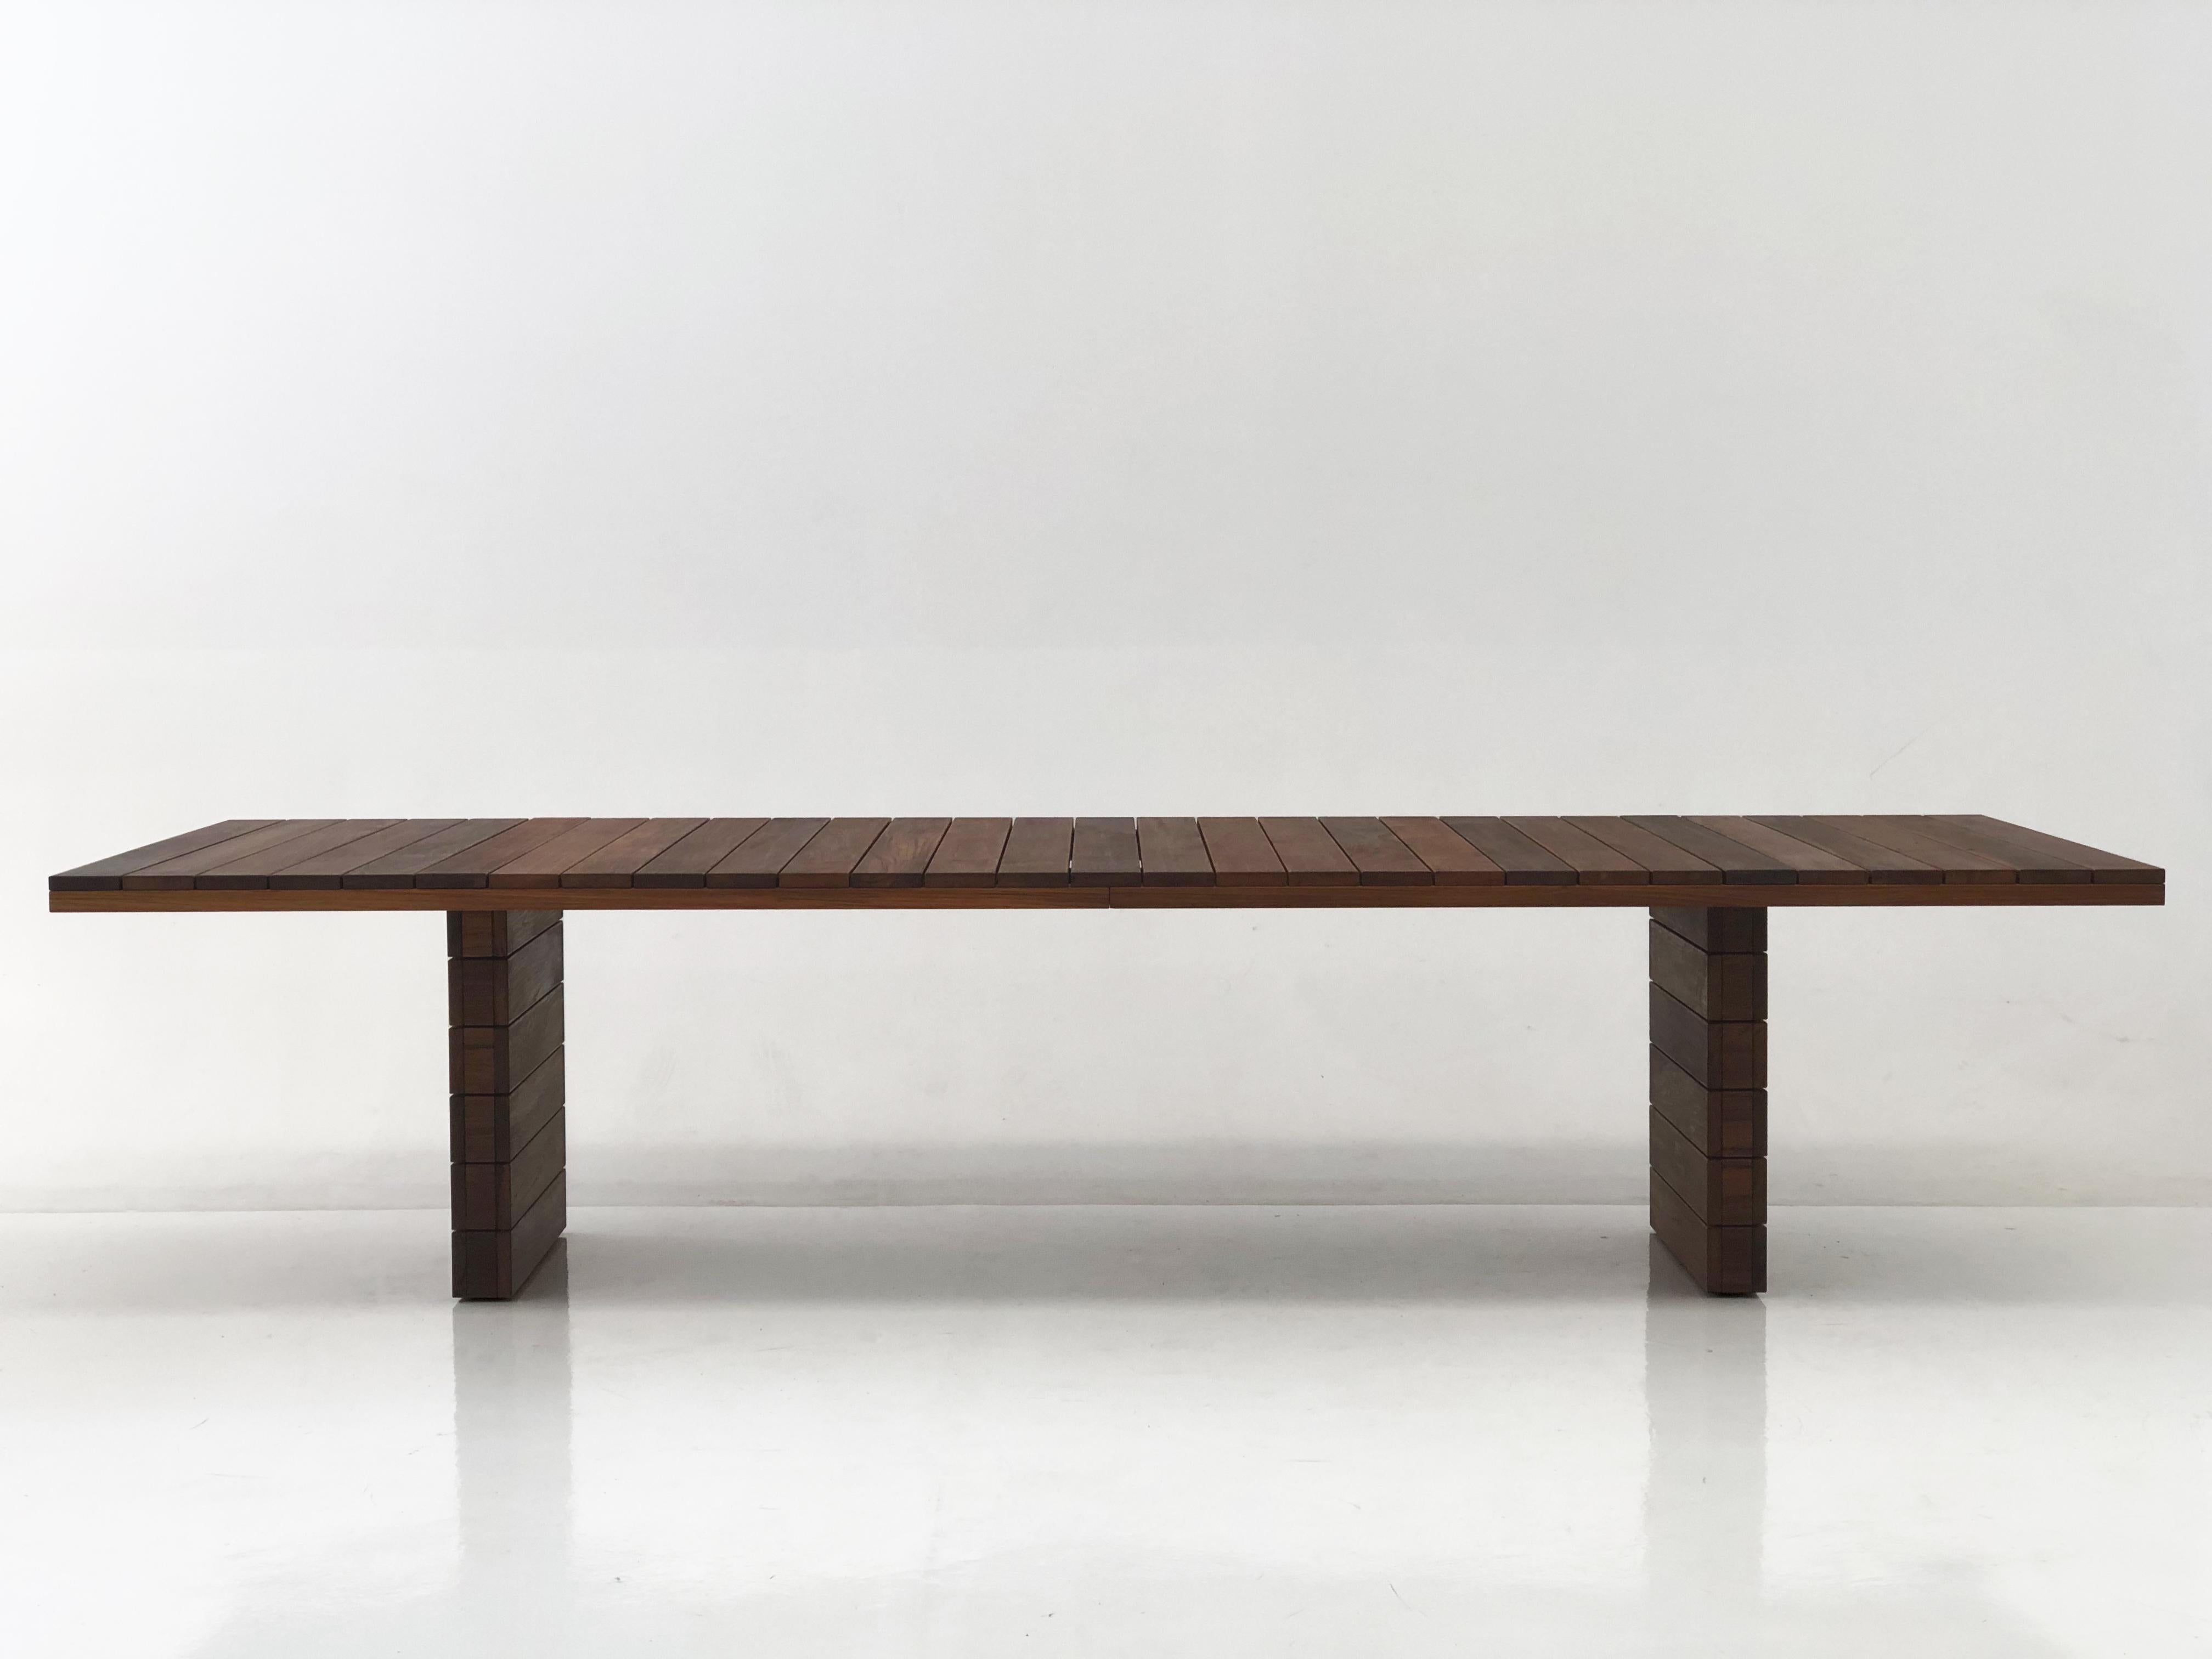 Majo ist ein Tisch, der sich perfekt in den natürlichen Raum einfügt. Ein robuster, aber gleichzeitig eleganter Tisch (wie alle Stücke von Casa Casati), der so konzipiert ist, dass er auch bei Verwendung im Freien lange hält.

Die